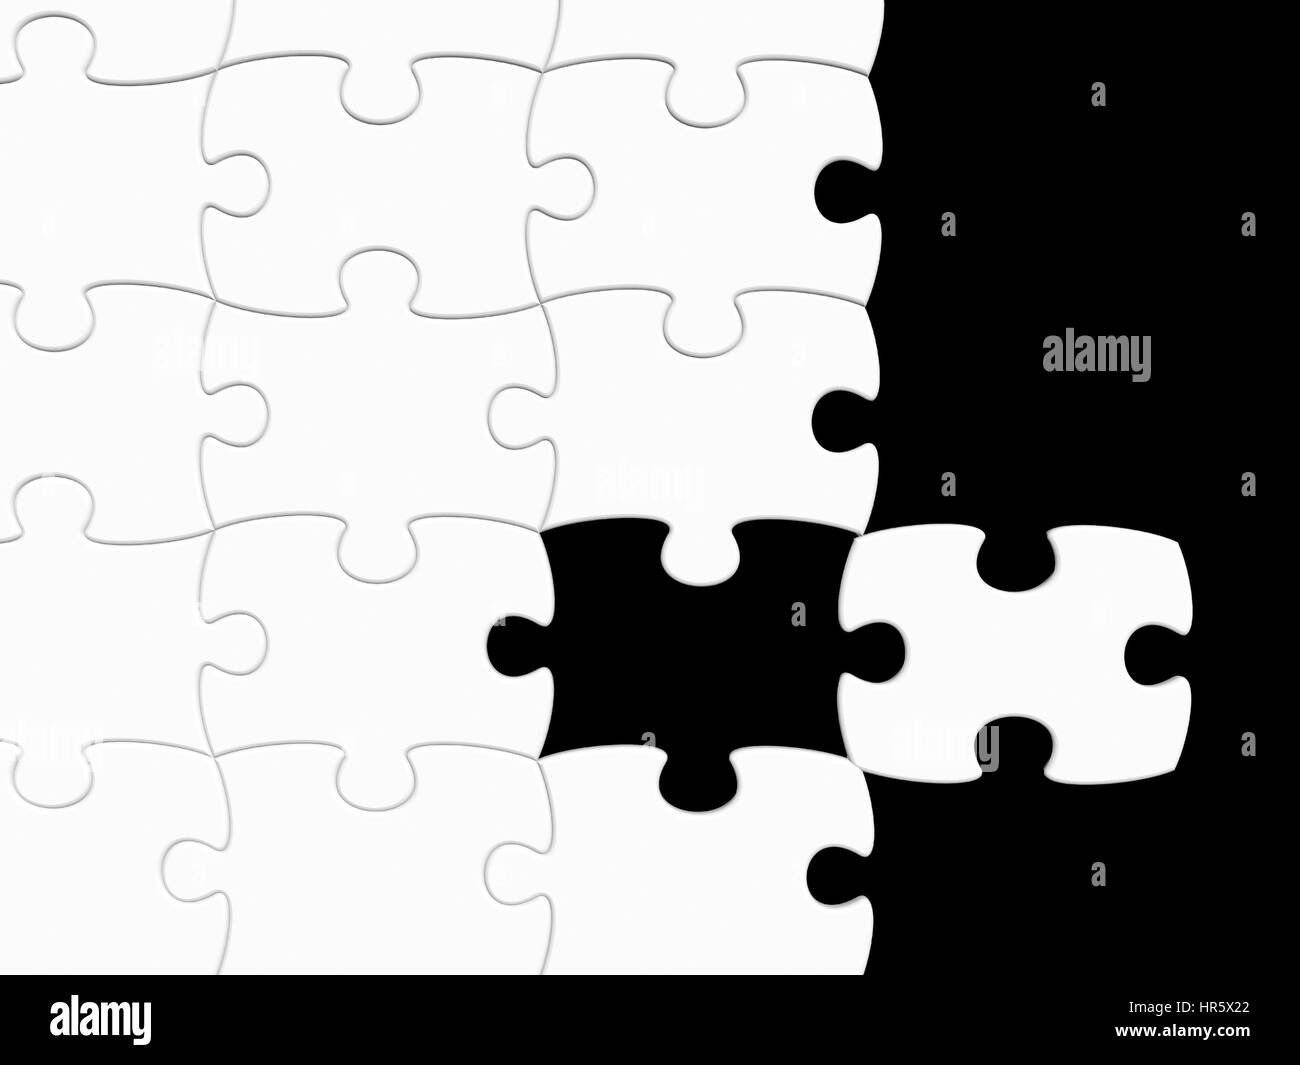 schwarz / weiß Puzzle mit einem fehlenden Stück - 3d render Stockfoto